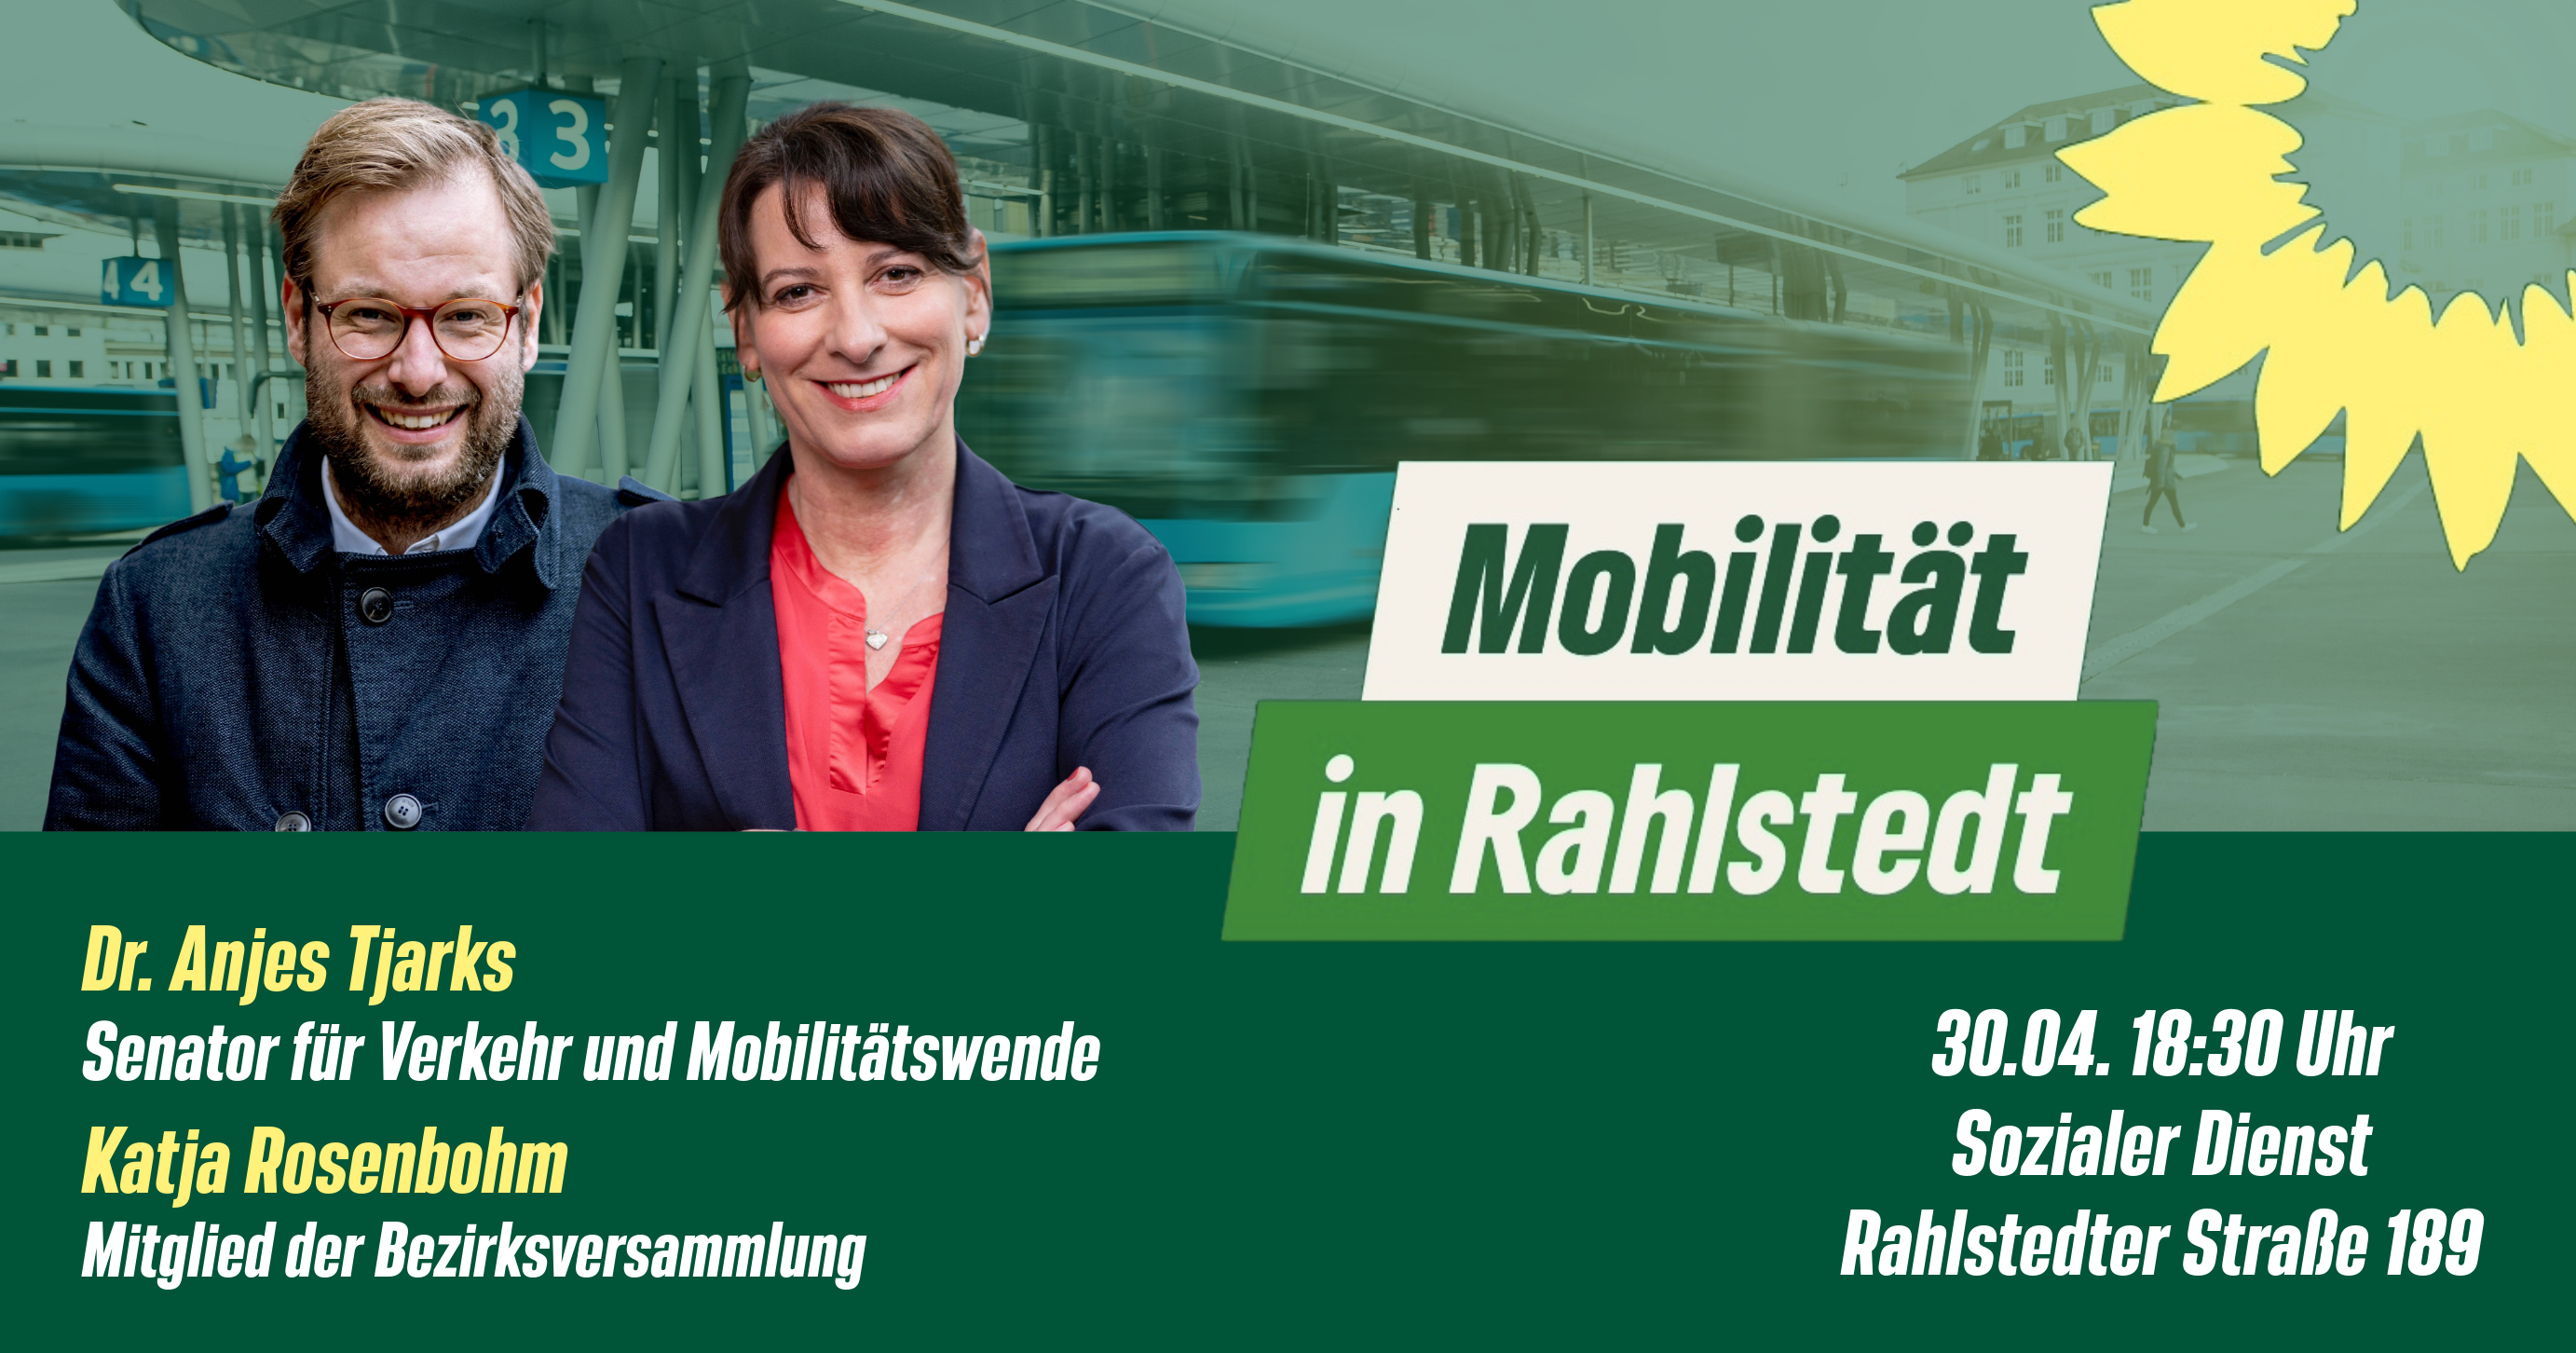 Hamburgs Senator für Verkehr und Mobilitätswende, Dr. Anjes Tjarks und Katja Rosenbohm sind zu sehen. Ankündigung der Veranstaltung "Mobilität in Rahlstedt".